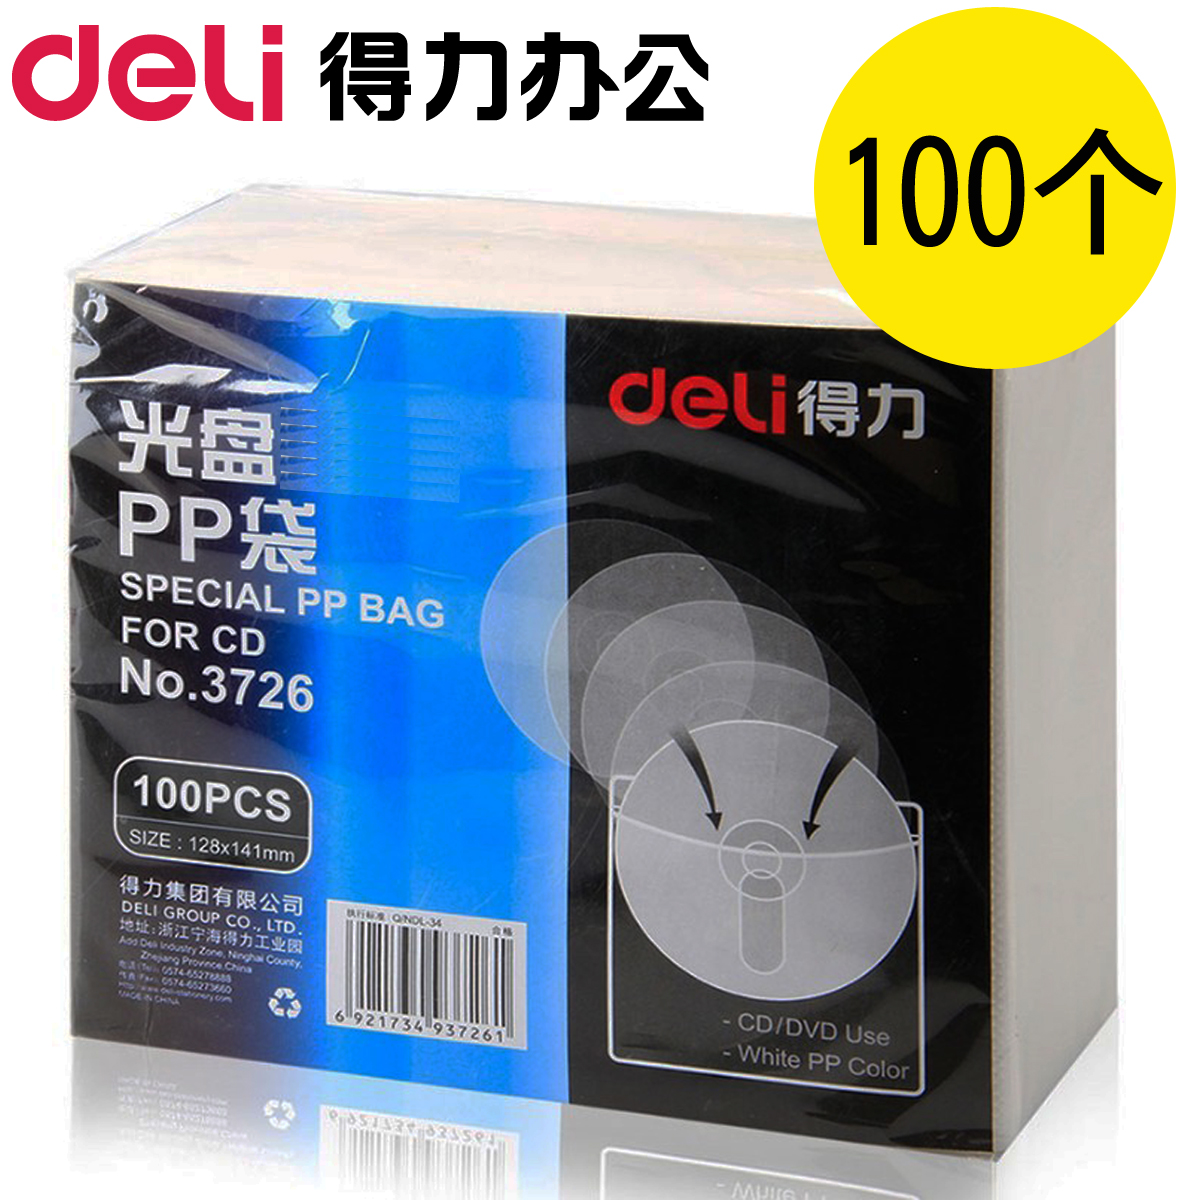 100个/得力光盘袋子PP袋CD/DVD保护套双面光碟袋包装袋光盘套